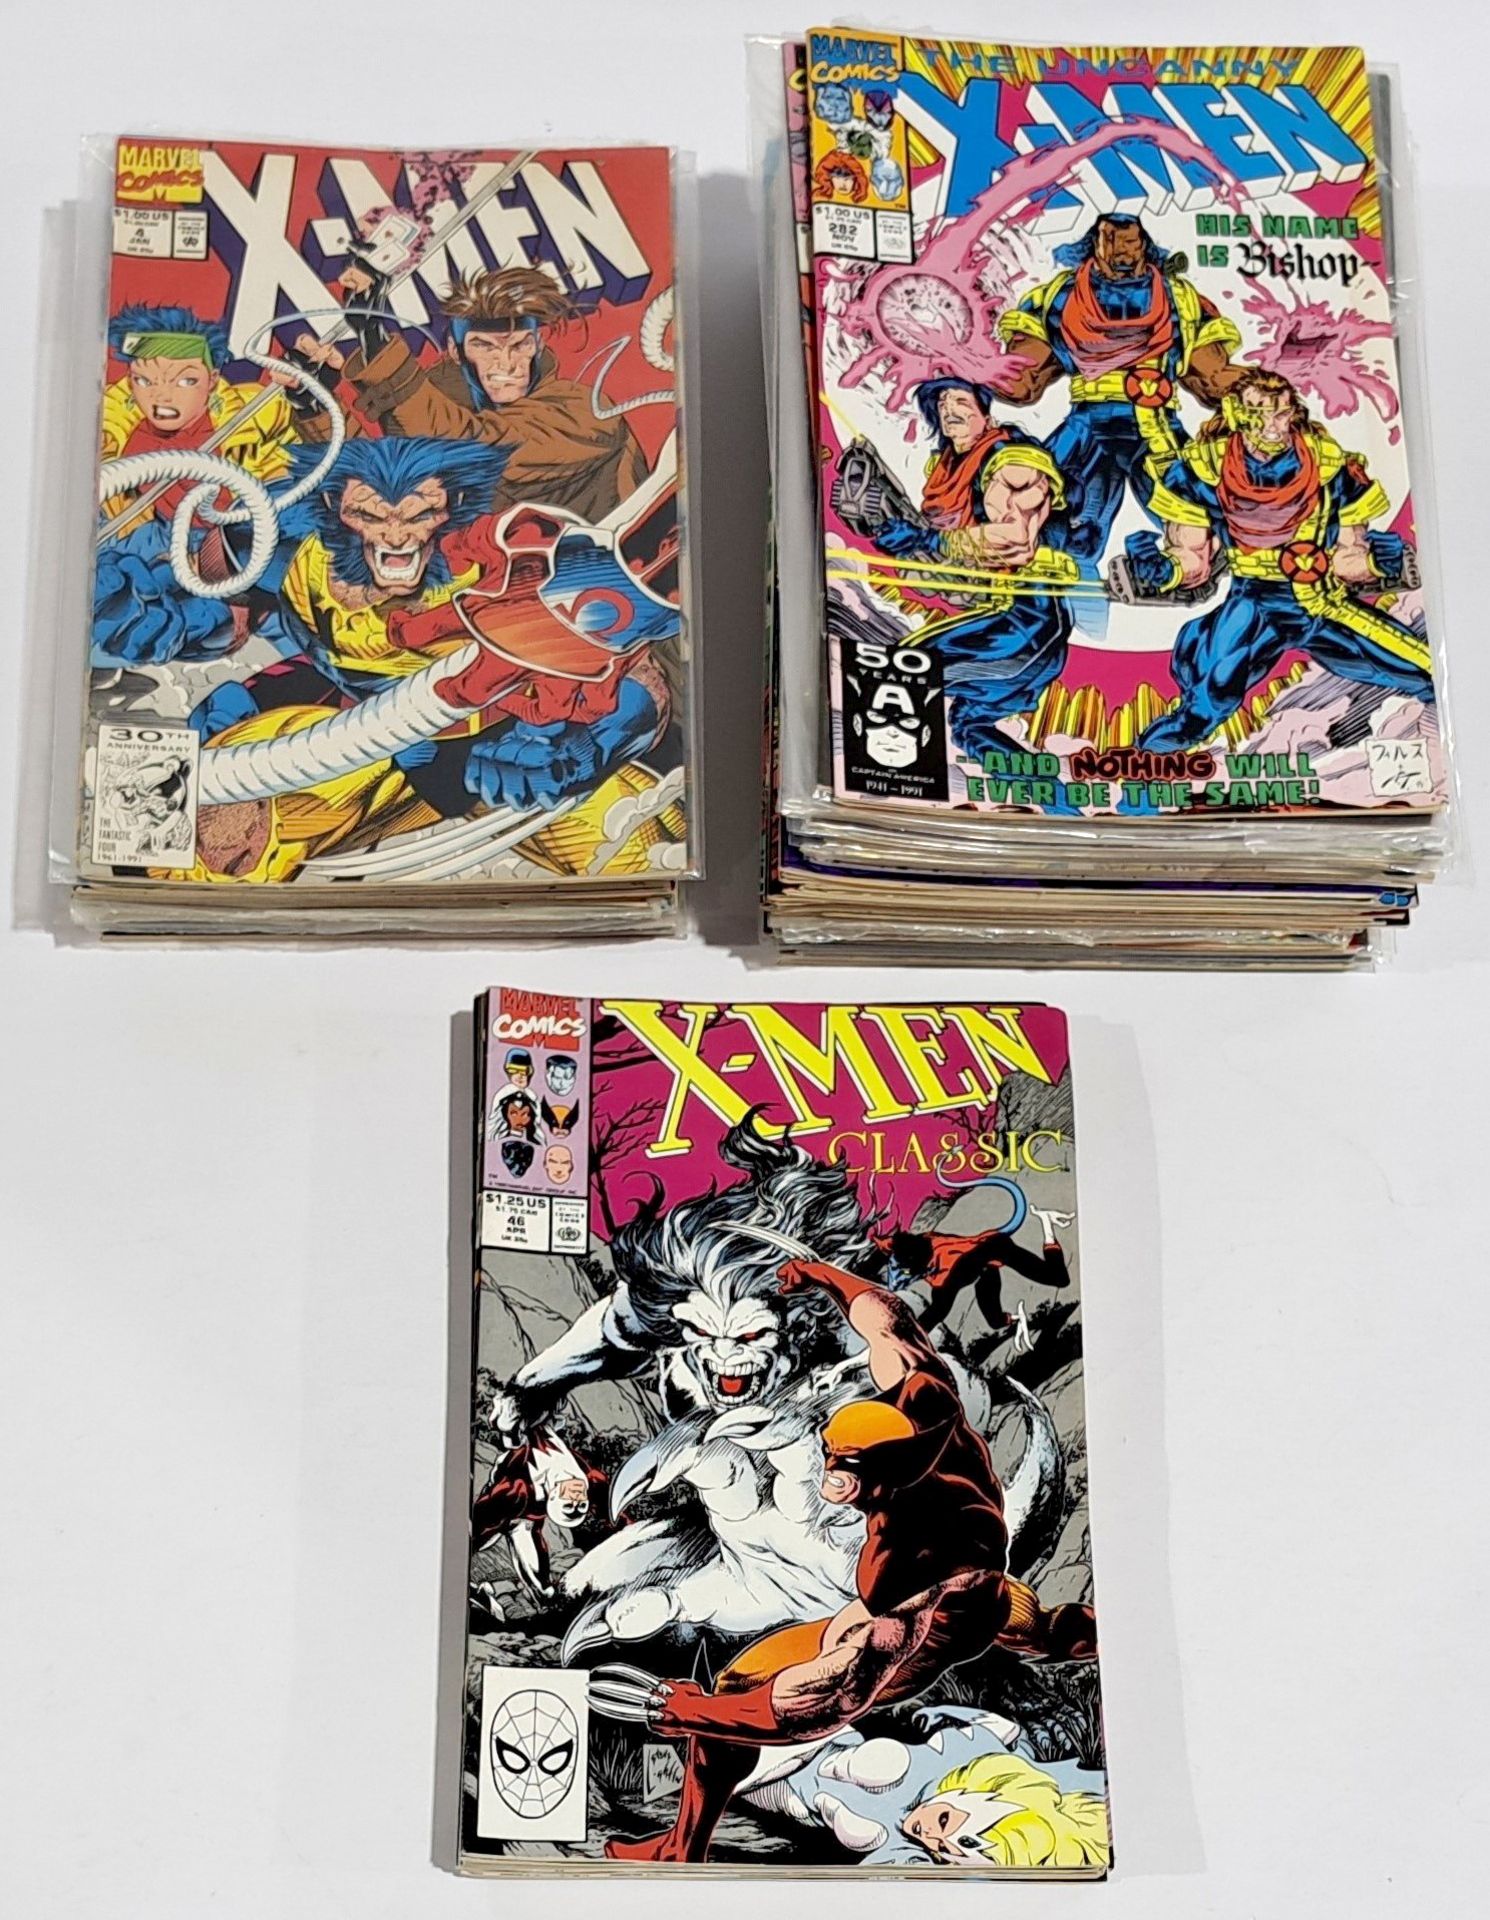 Quantity of Marvel X-Men Comics